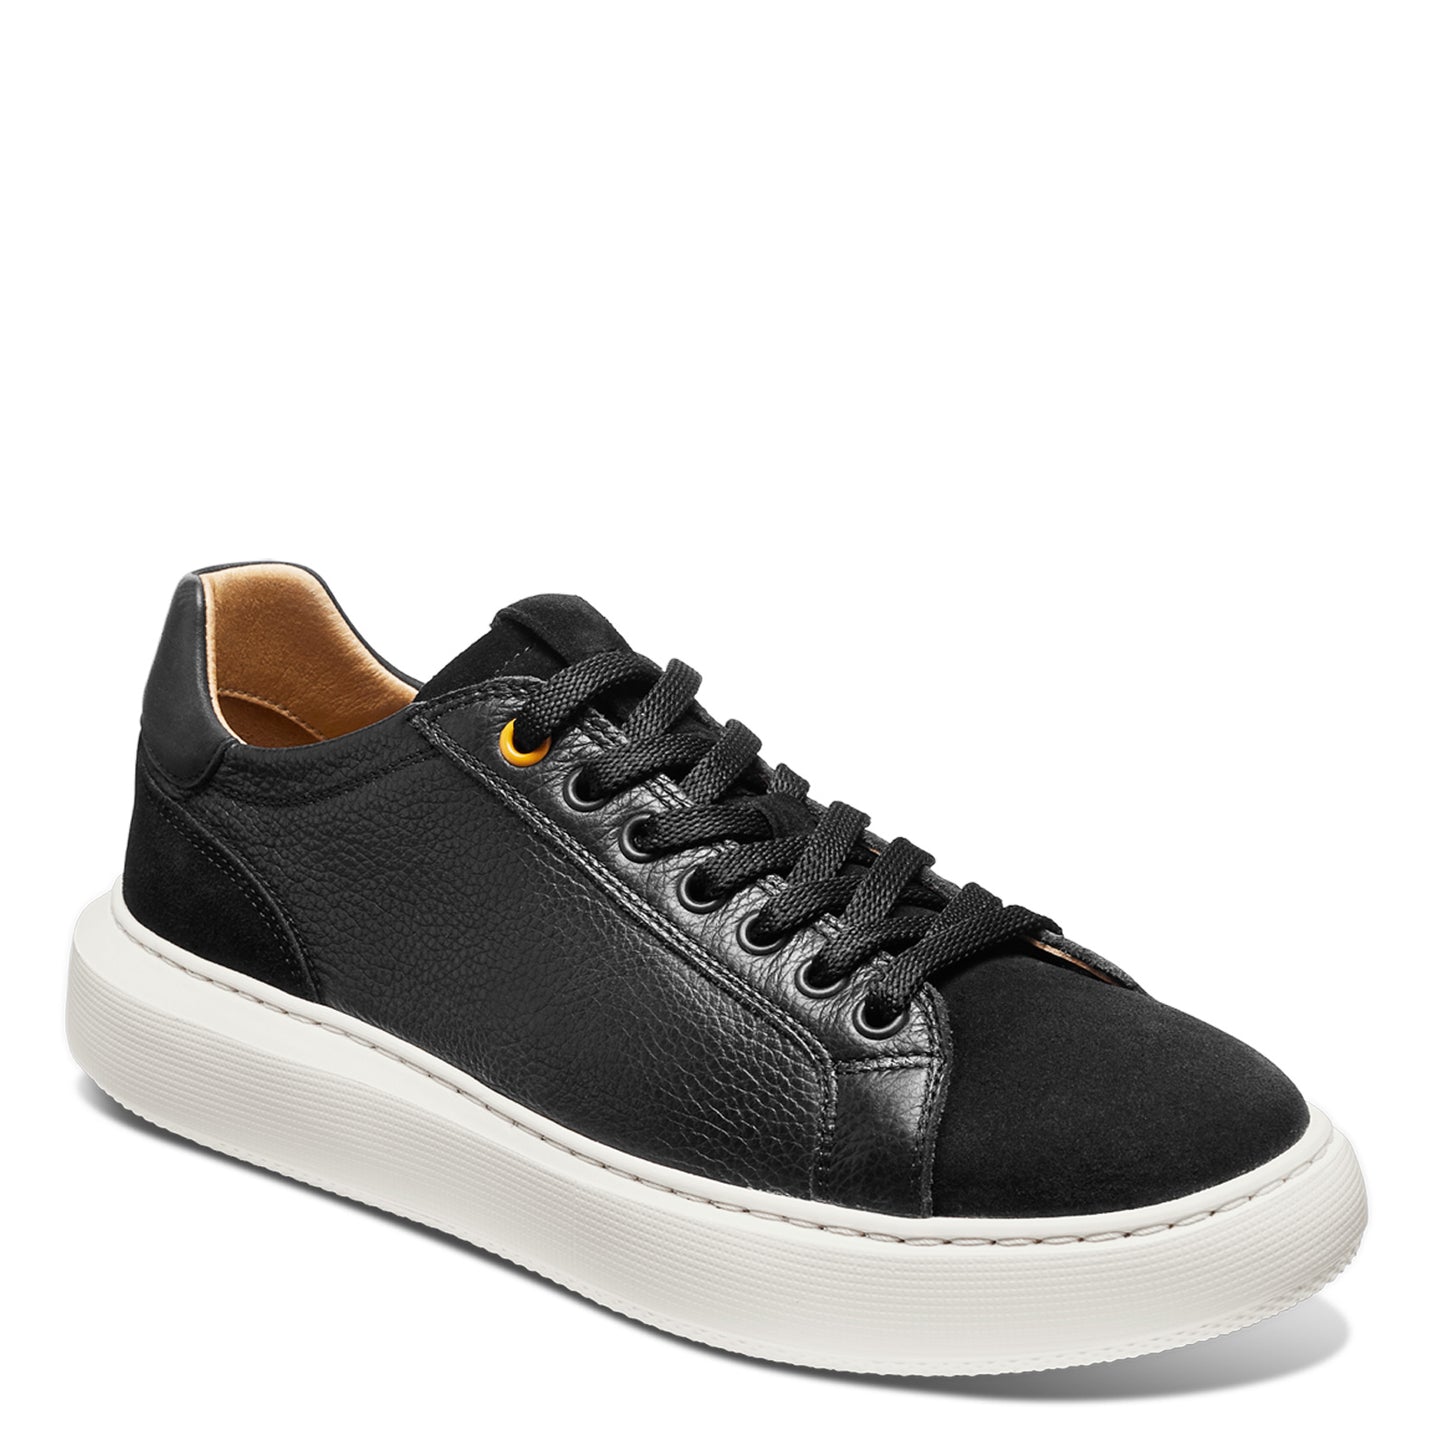 Peltz Shoes  Women's Samuel Hubbard Sunset Sneaker Black Leather W1650-048